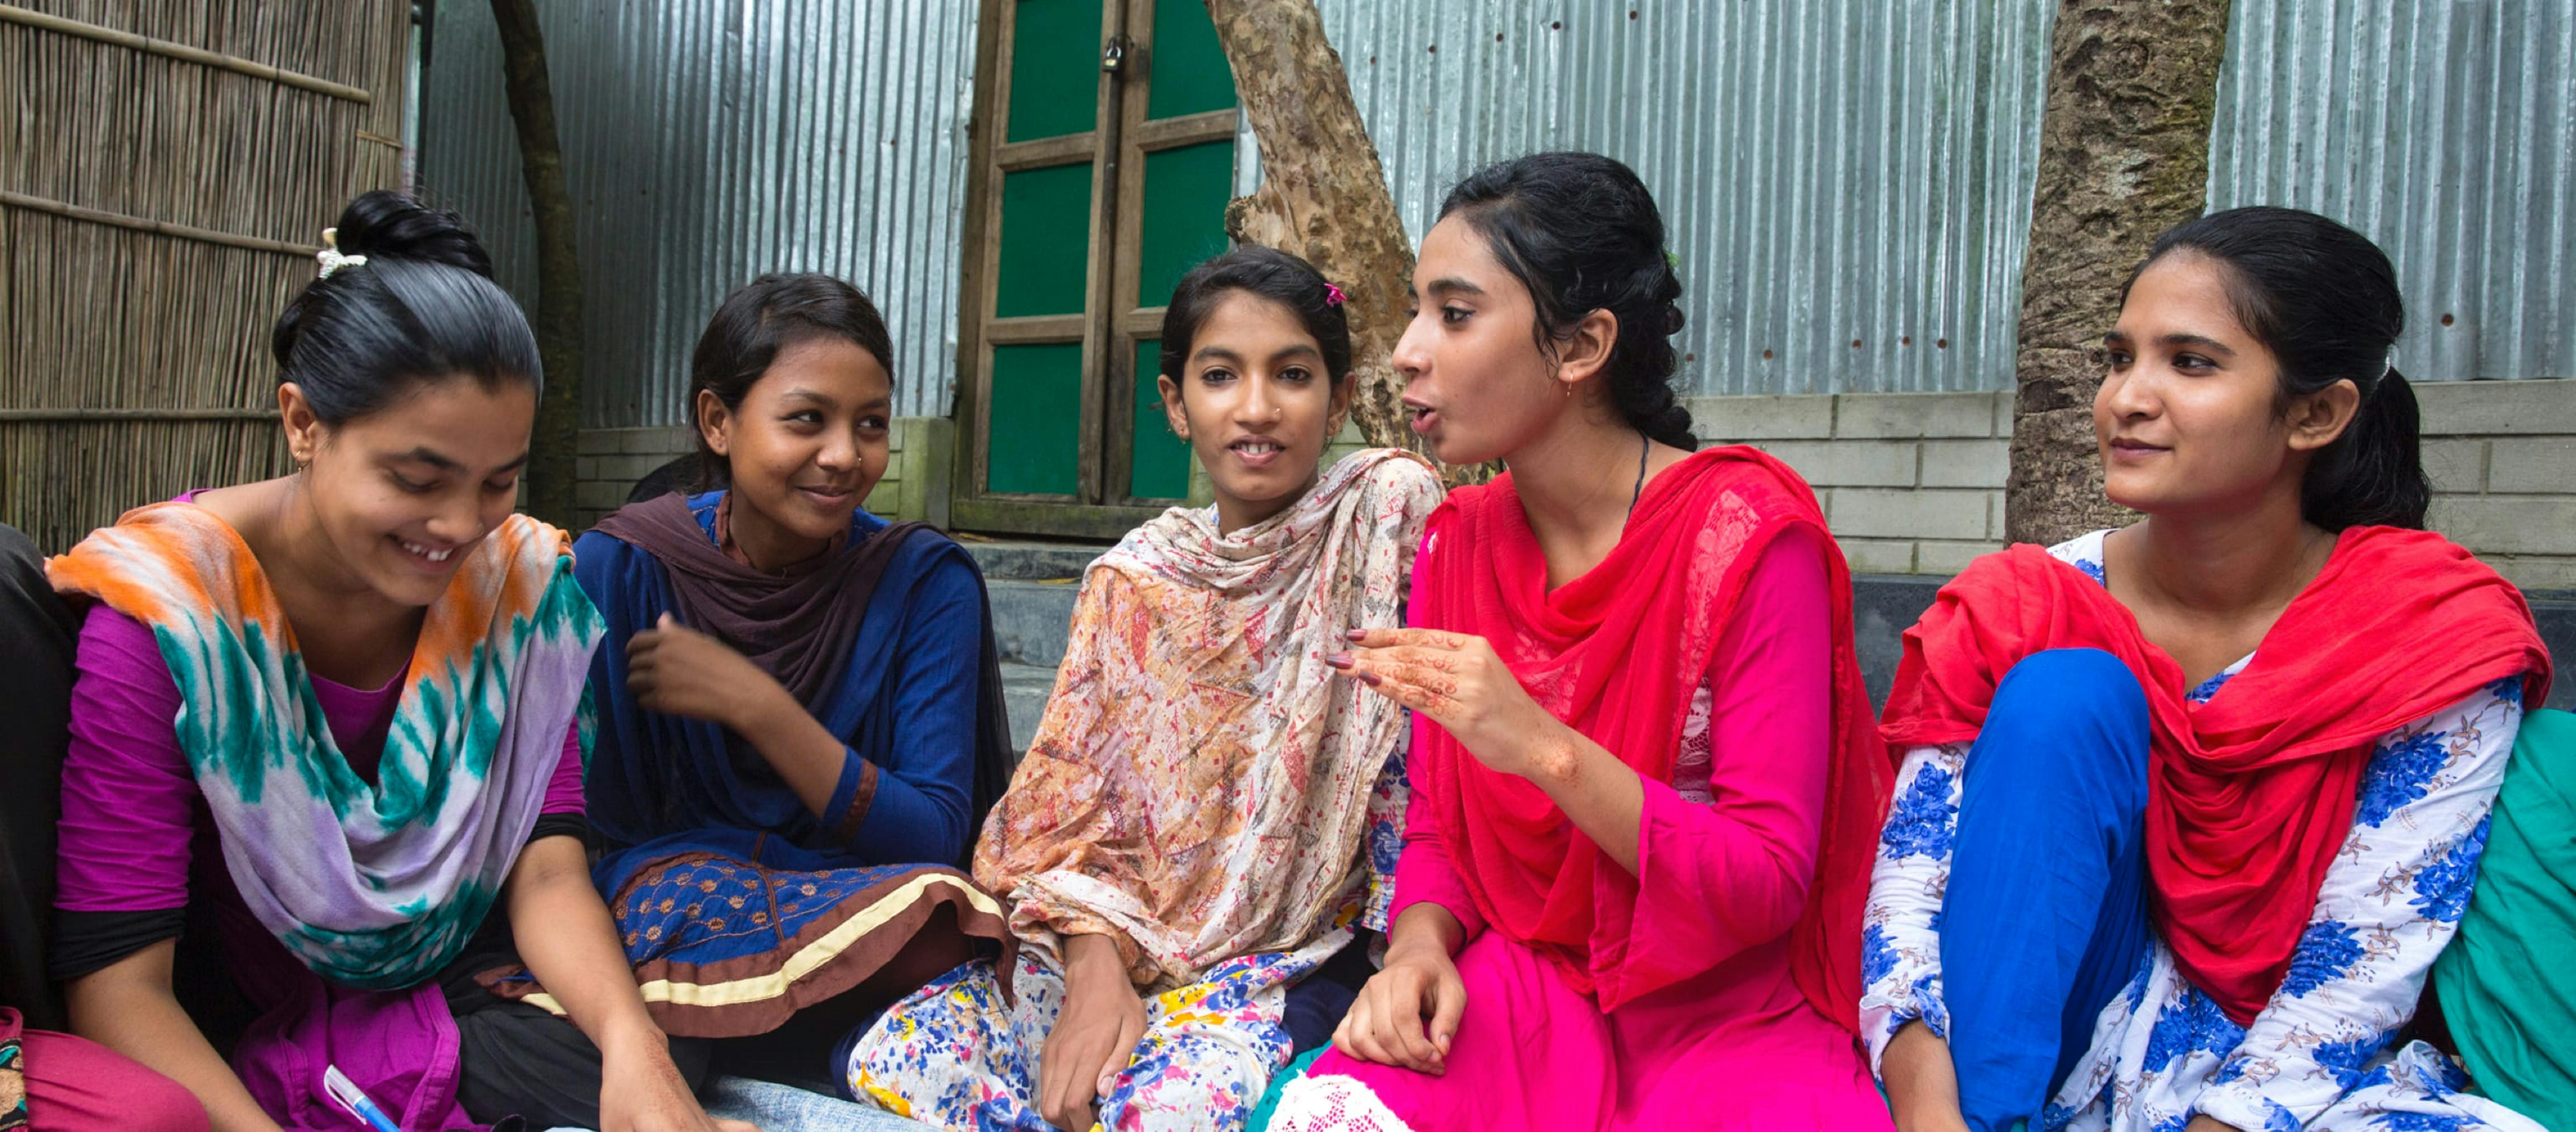 Riunione di adolescenti bengalesi, in Bangladesh.